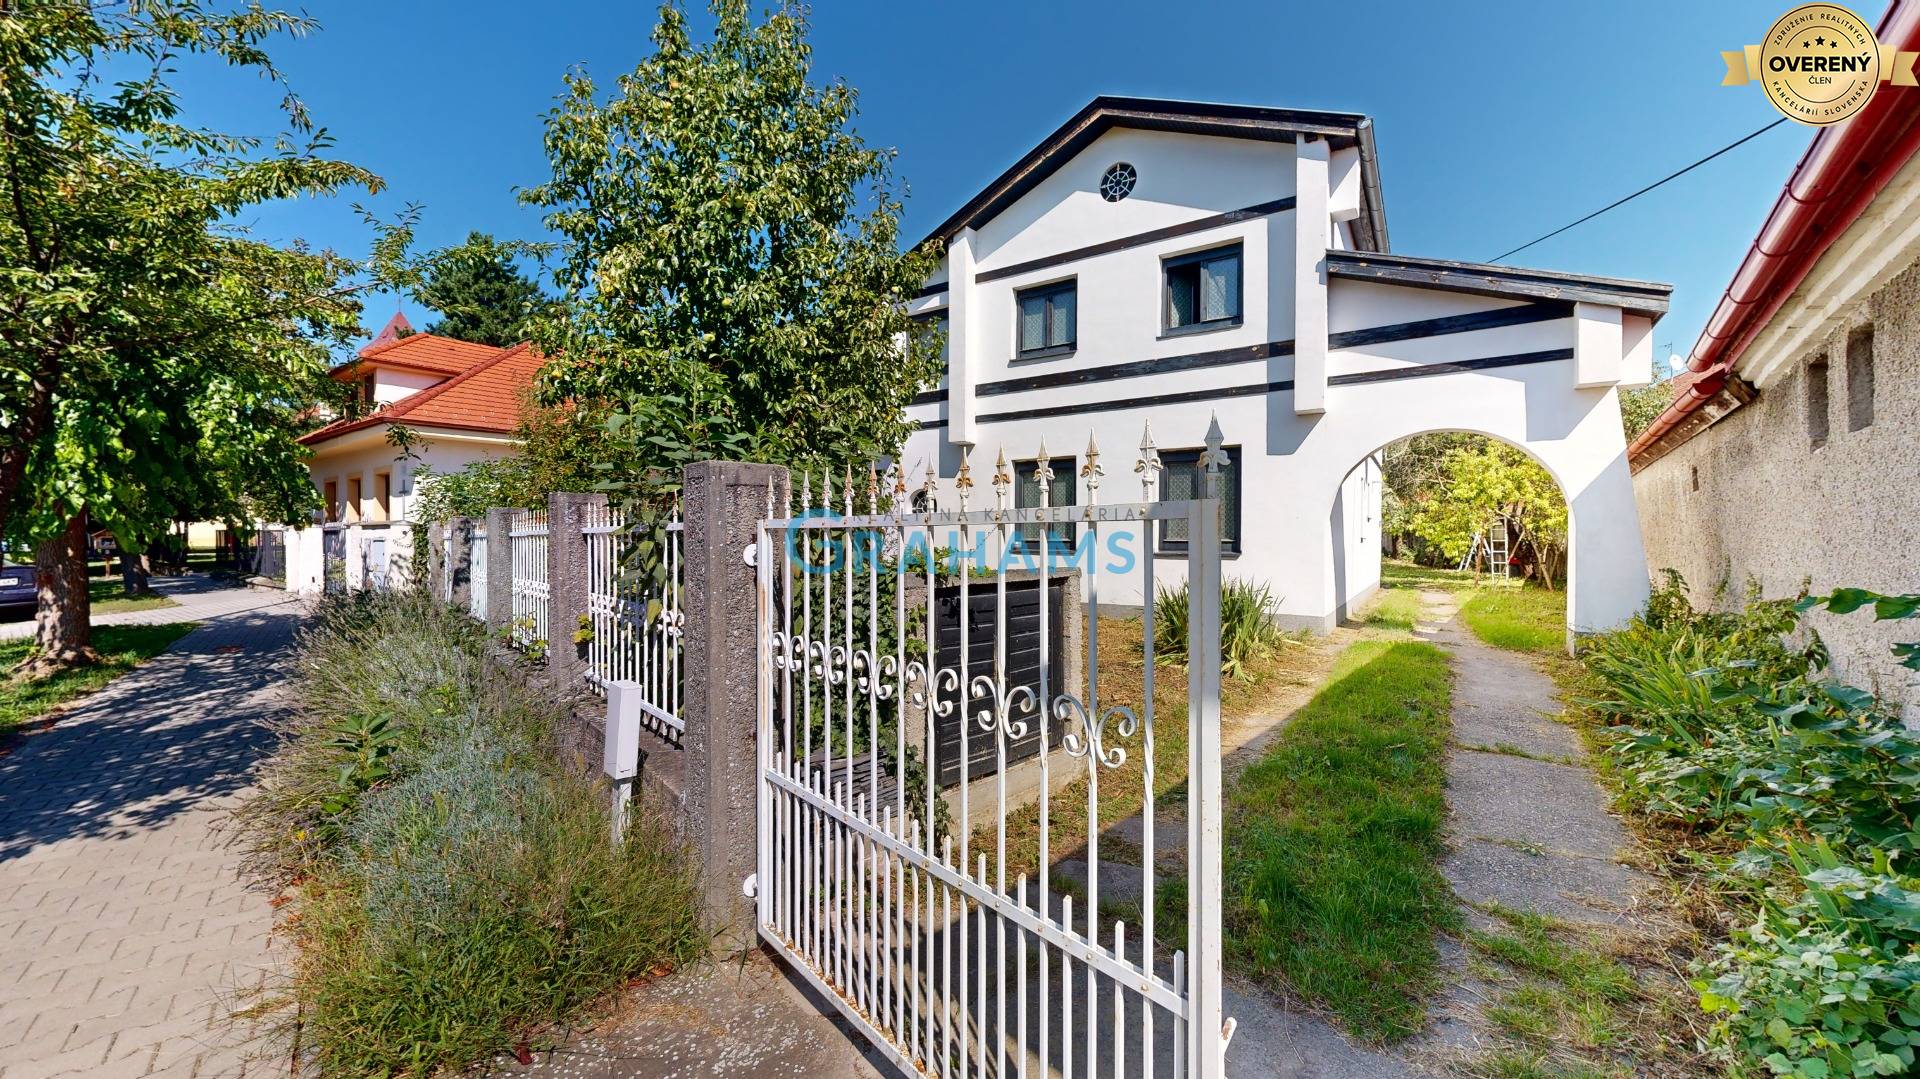 Sale Family house, Family house, Mandľová, Bratislava - Jarovce, Slova